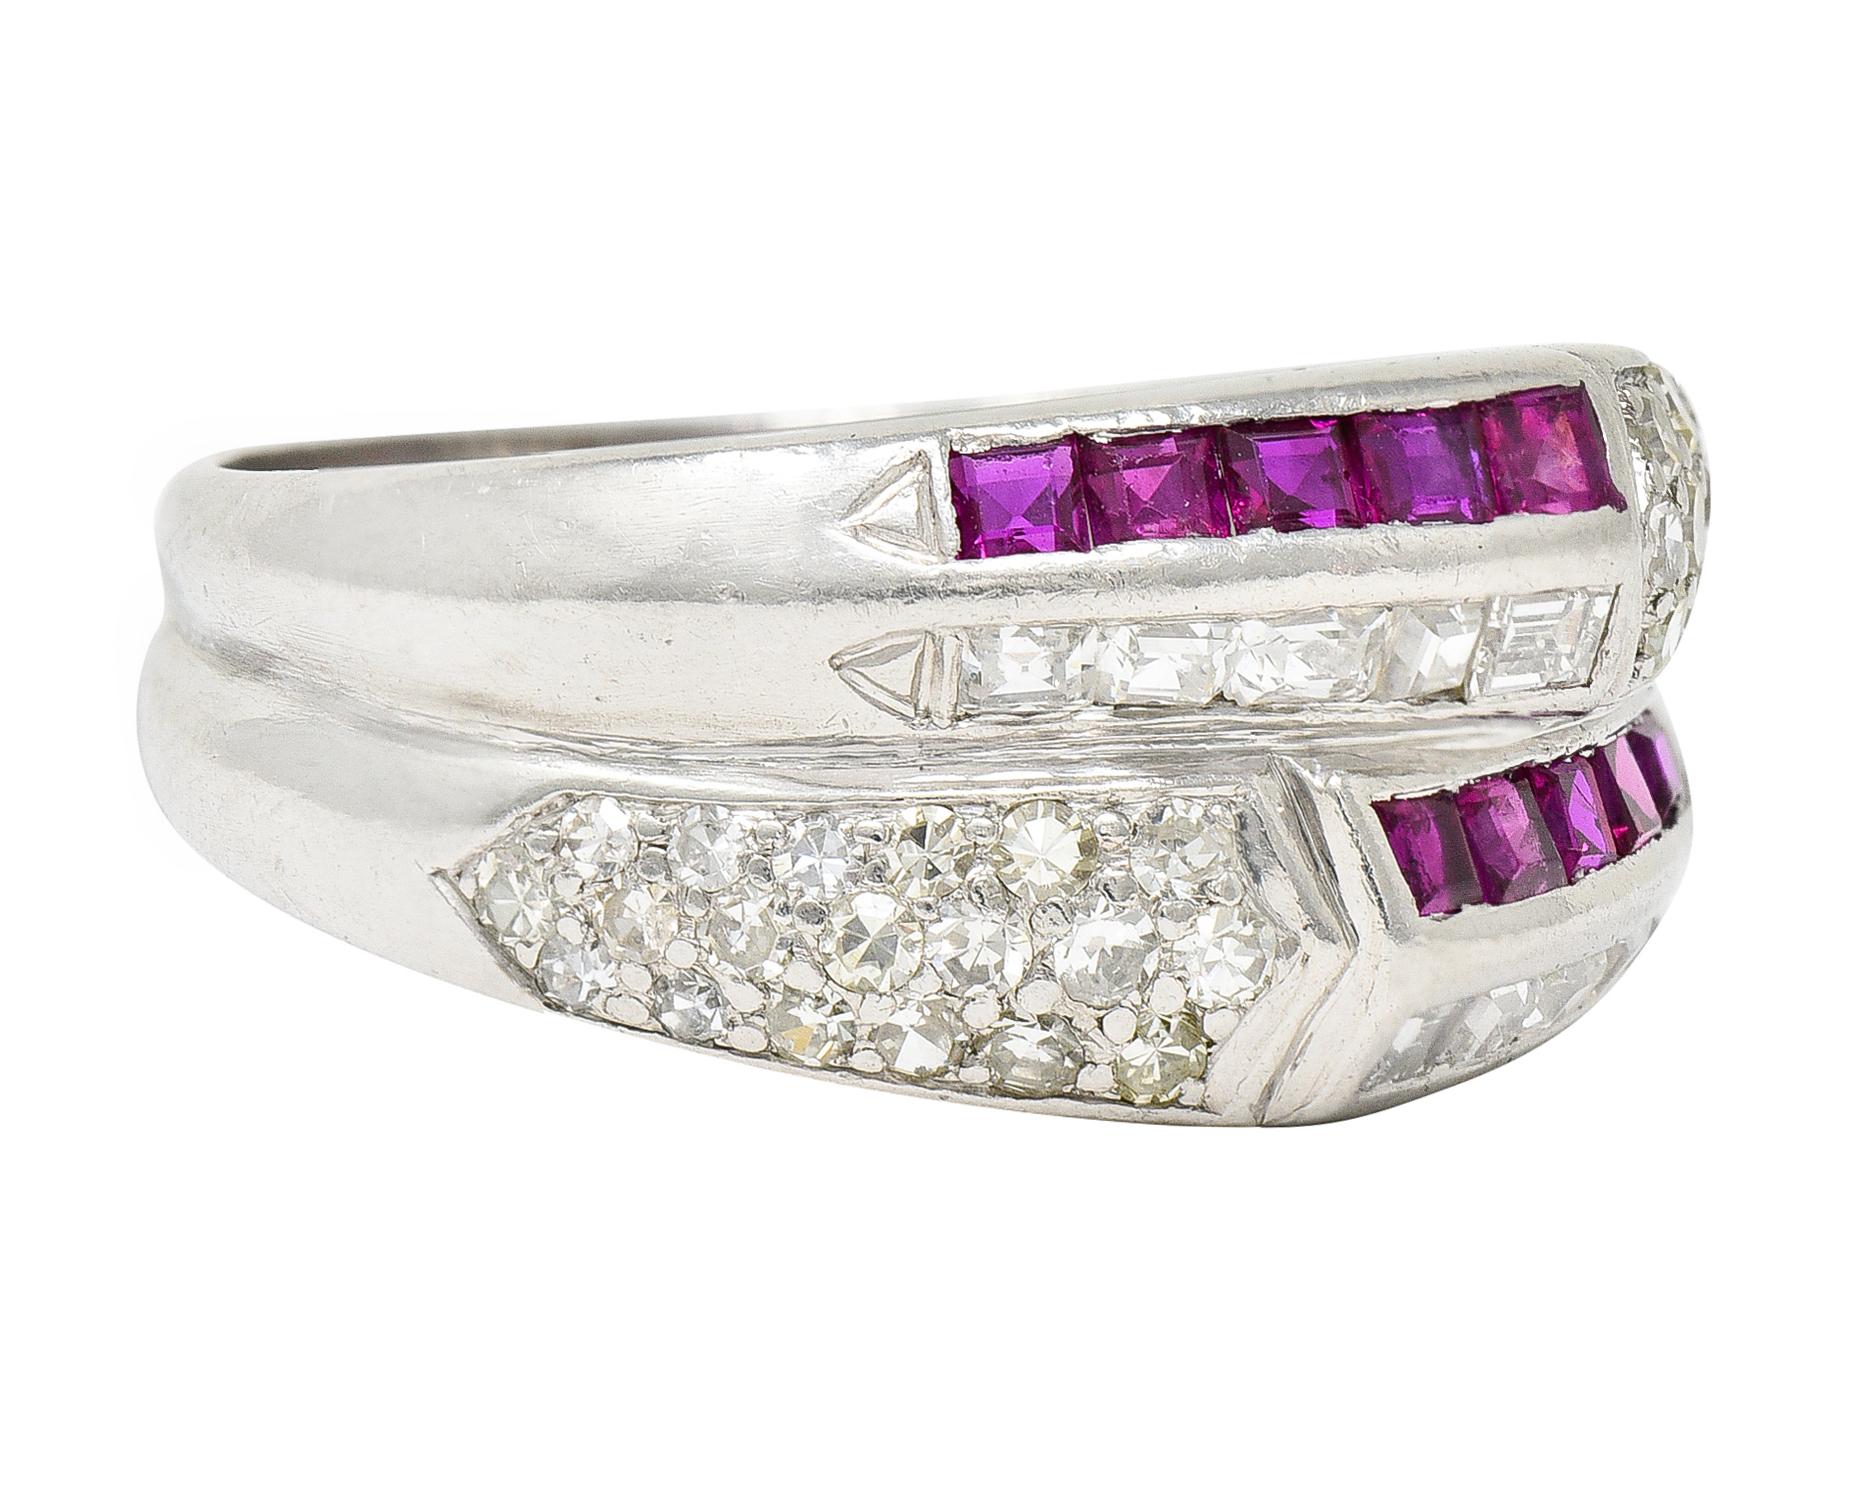 L'anneau est conçu comme deux anneaux fusionnés et profondément striés. Avec deux rangées de rubis de taille carrée sertis en canal. La couleur rouge pourpre est bien assortie et le poids total est d'environ 0,60 carat. Deux rangées de diamants